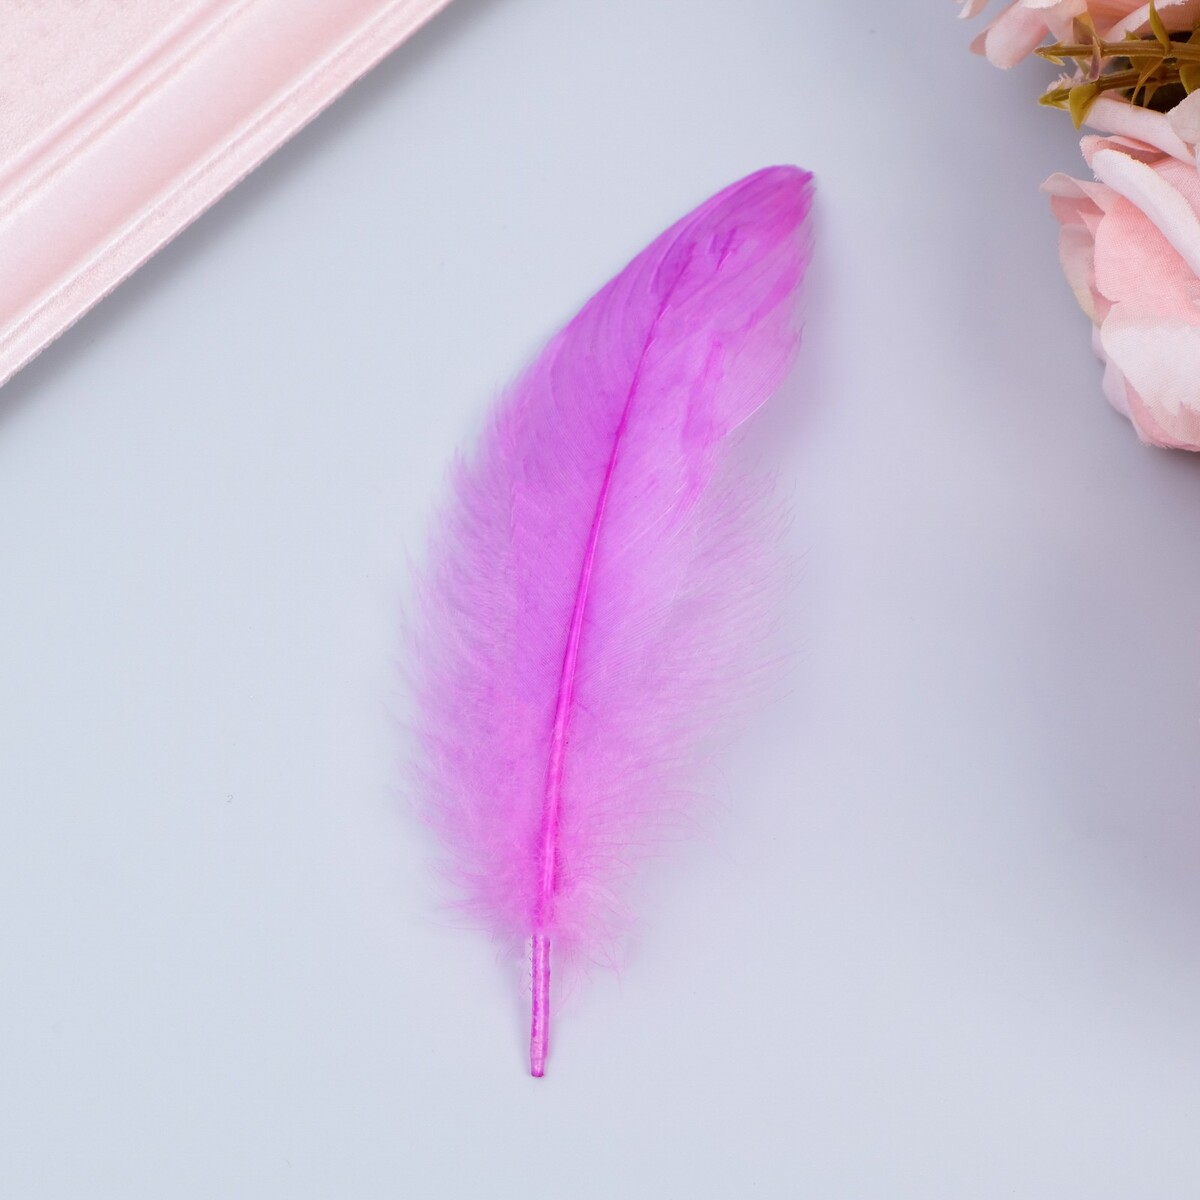 Наполнитель из перьев для шаров и подарков, светло-фиолетовый, 10-12 см 8 г набор для создания композиций из воздушных шаров набор 52 шт розовый фиолетовый синий